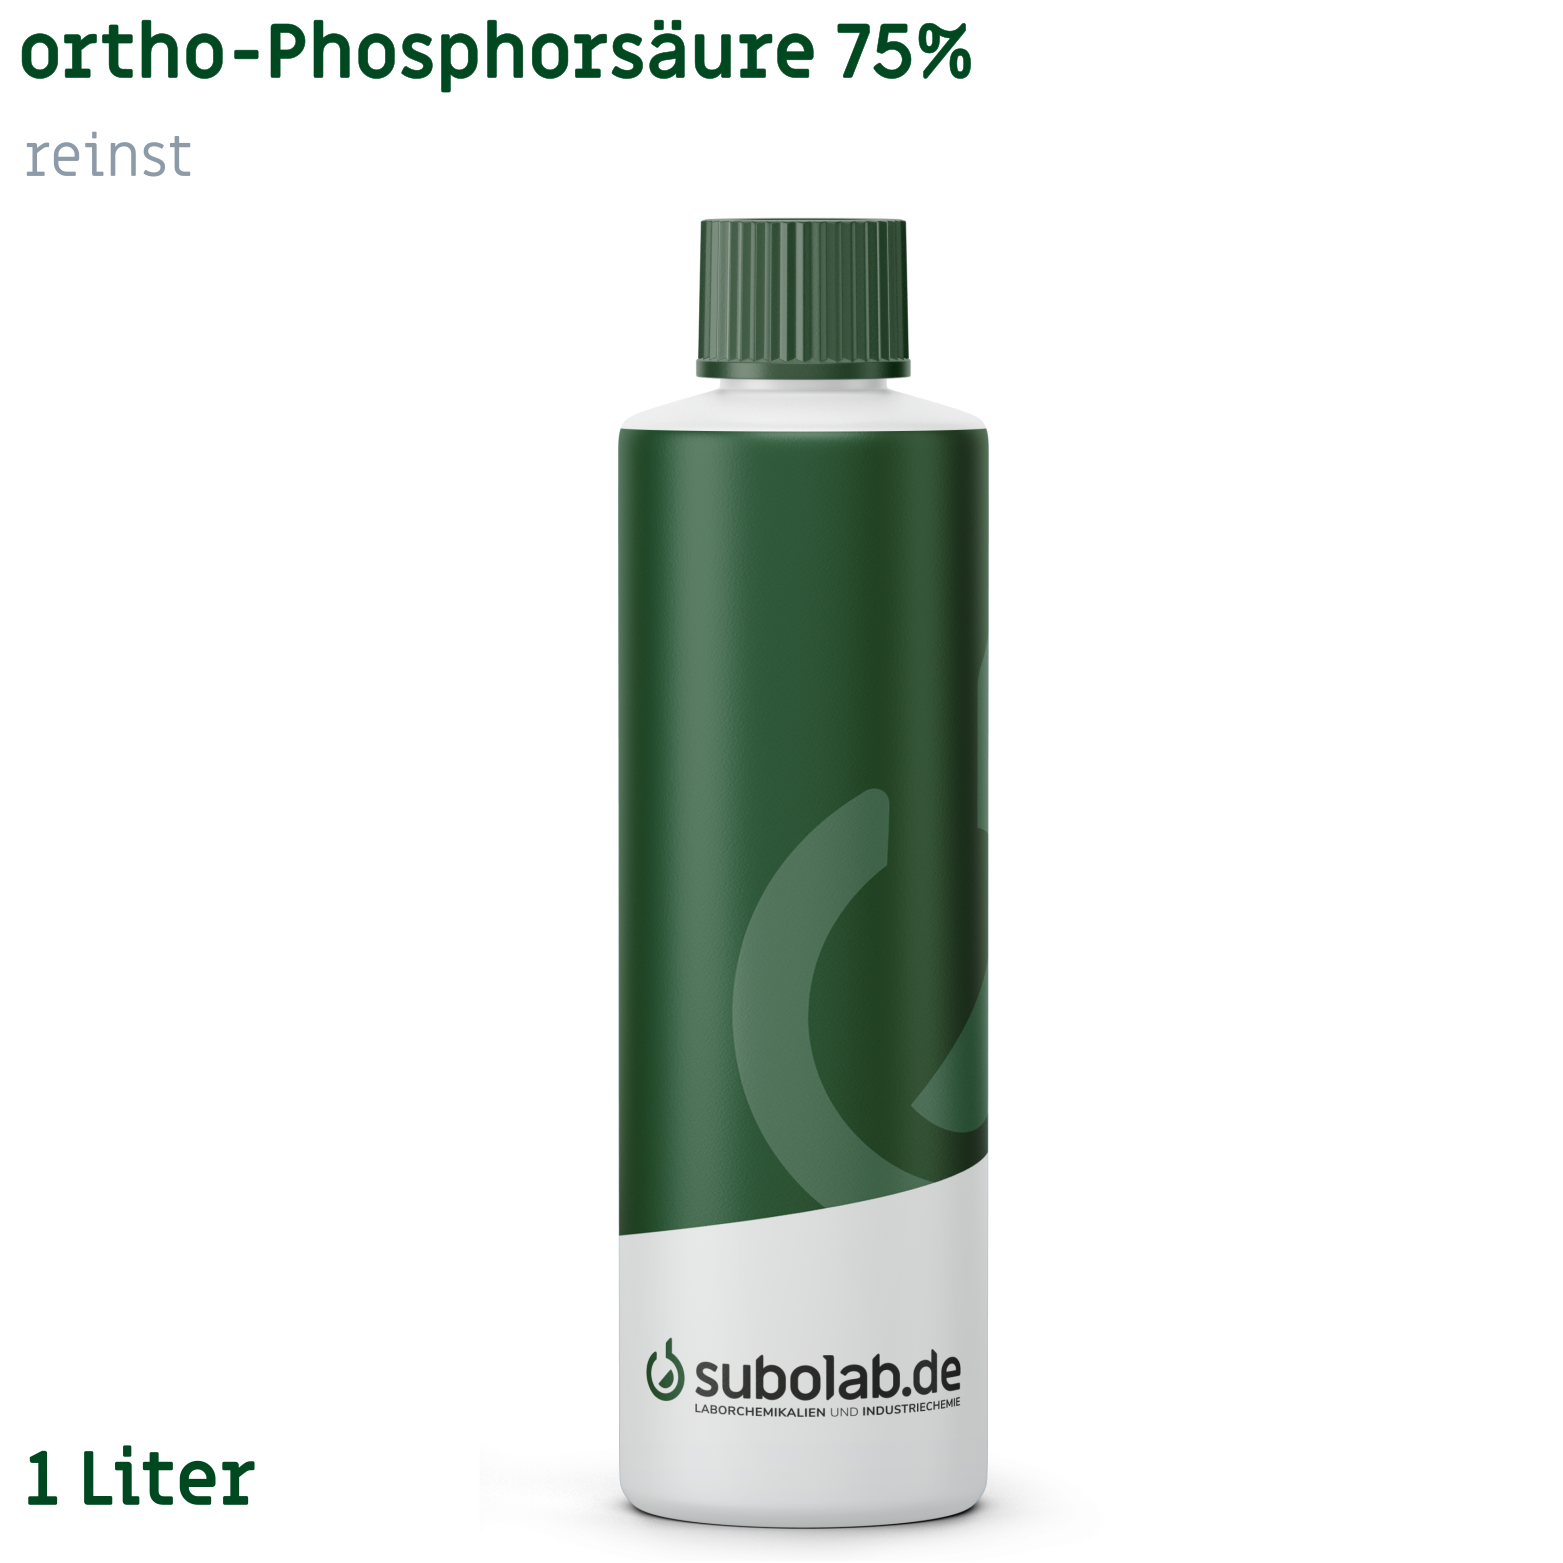 Bild von ortho-Phosphorsäure 75% reinst (1 Liter)